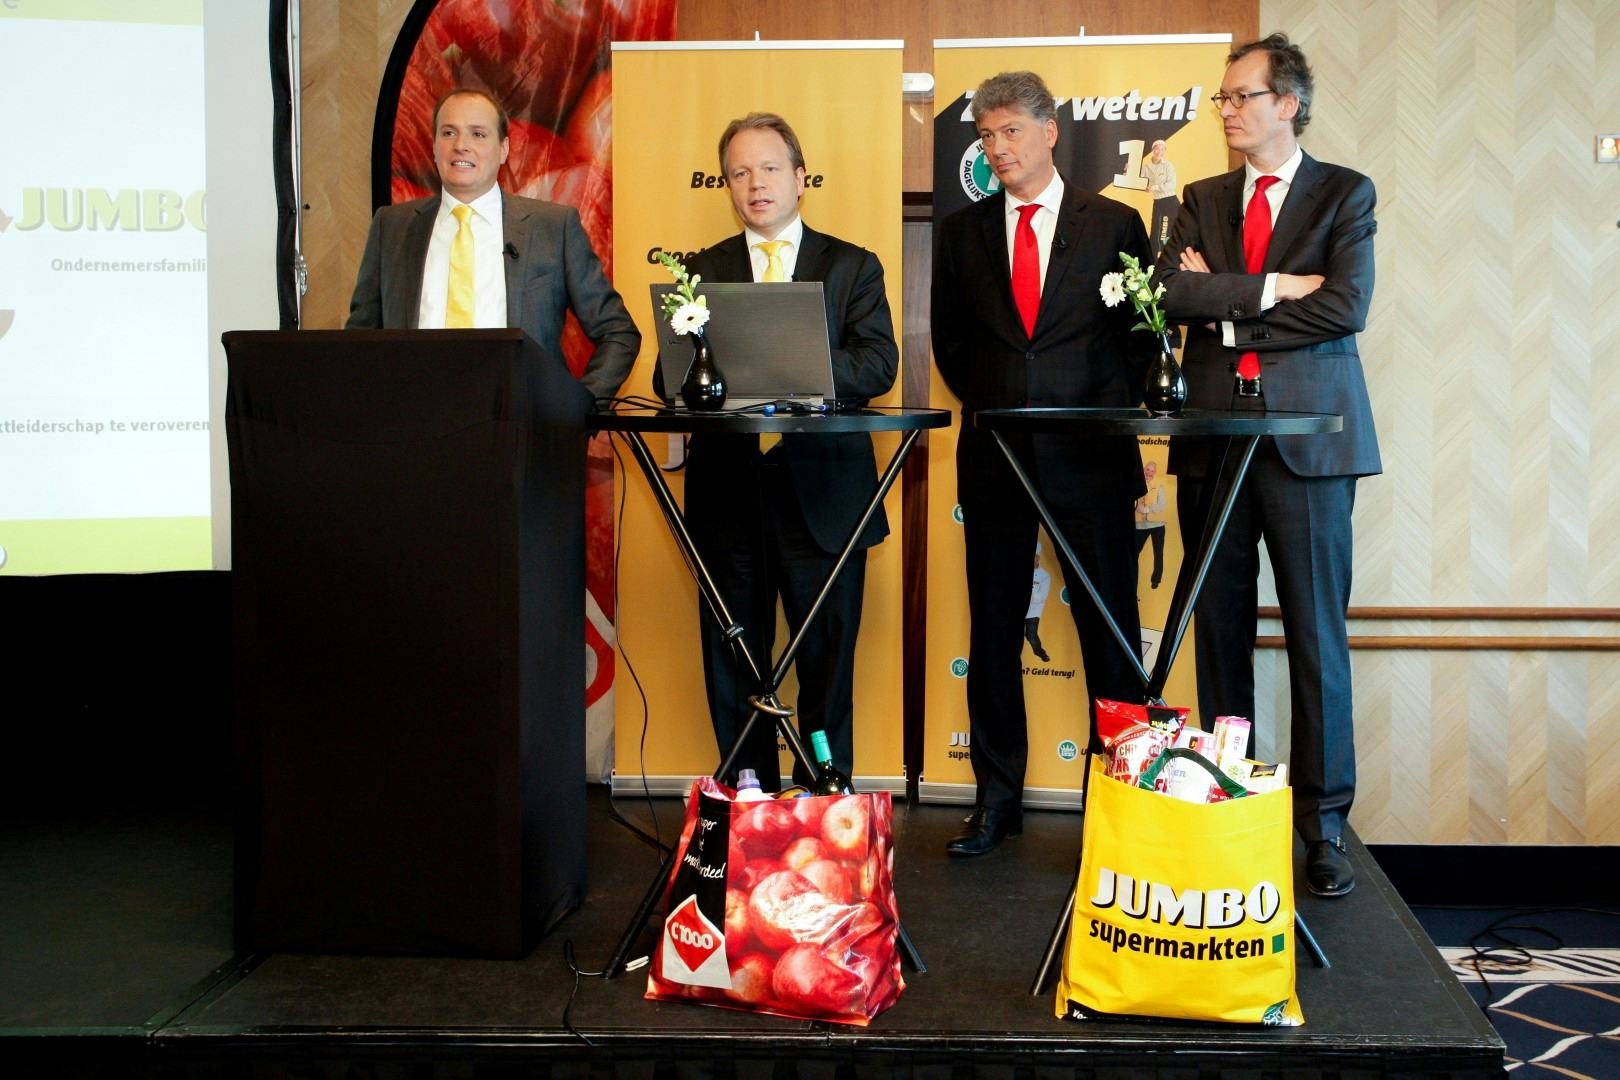 Persconferentie van Jumbo en C100 in het Amsterdamse Hilton Hotel waarin de overname van C1000 door Jumbo werd aangekondigd en toegelicht.  Foto: Sebastiaan Rozendaal